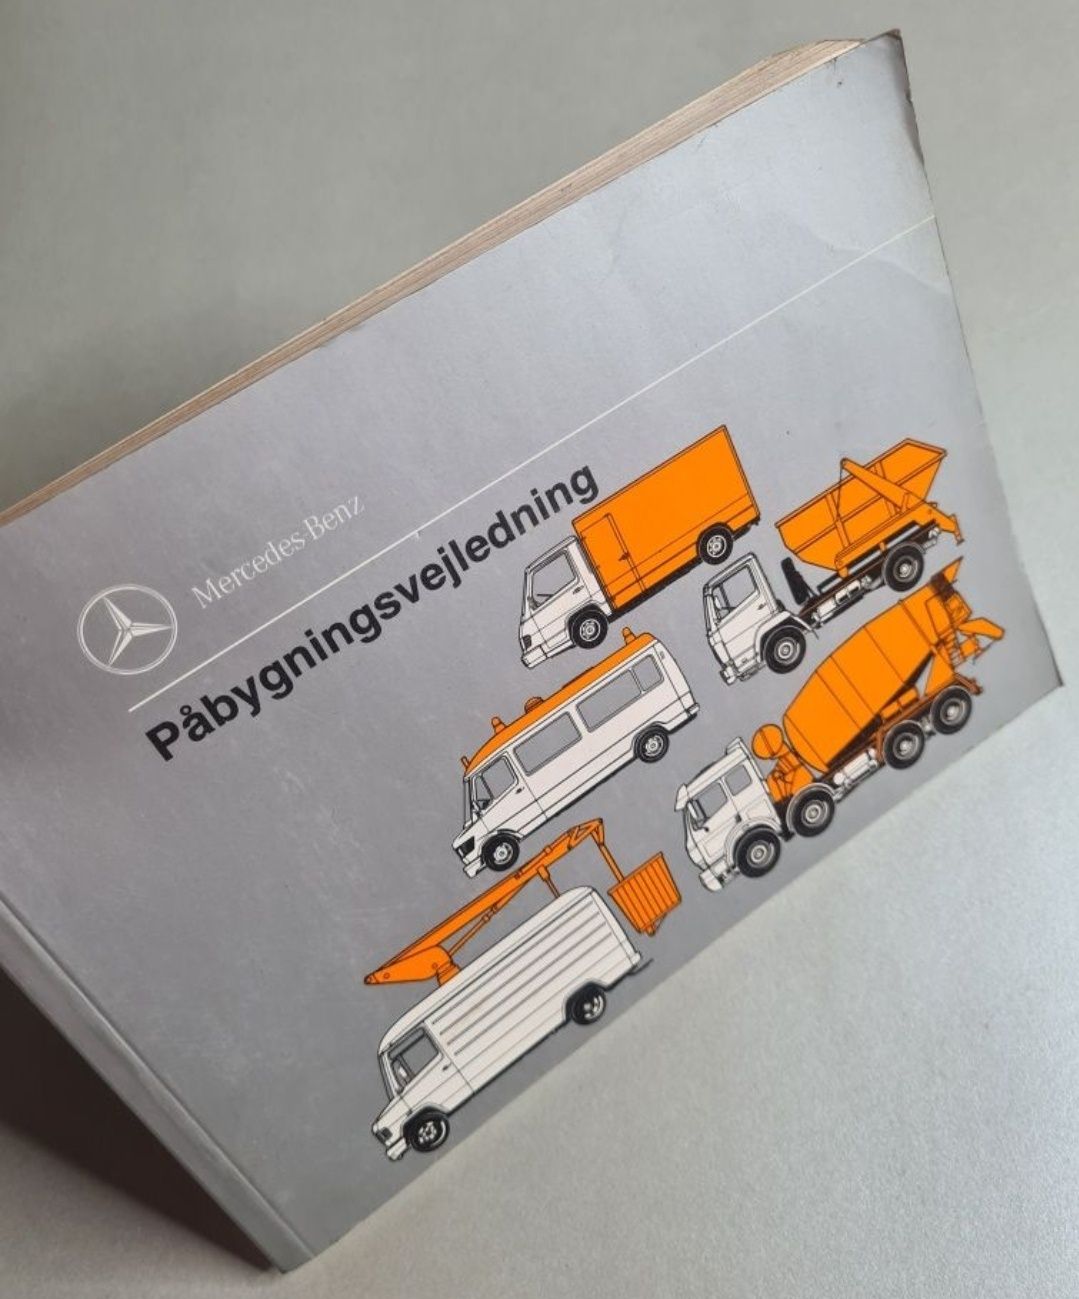 Mercedes-Benz - Påbygningsvejledning. Instrukcja